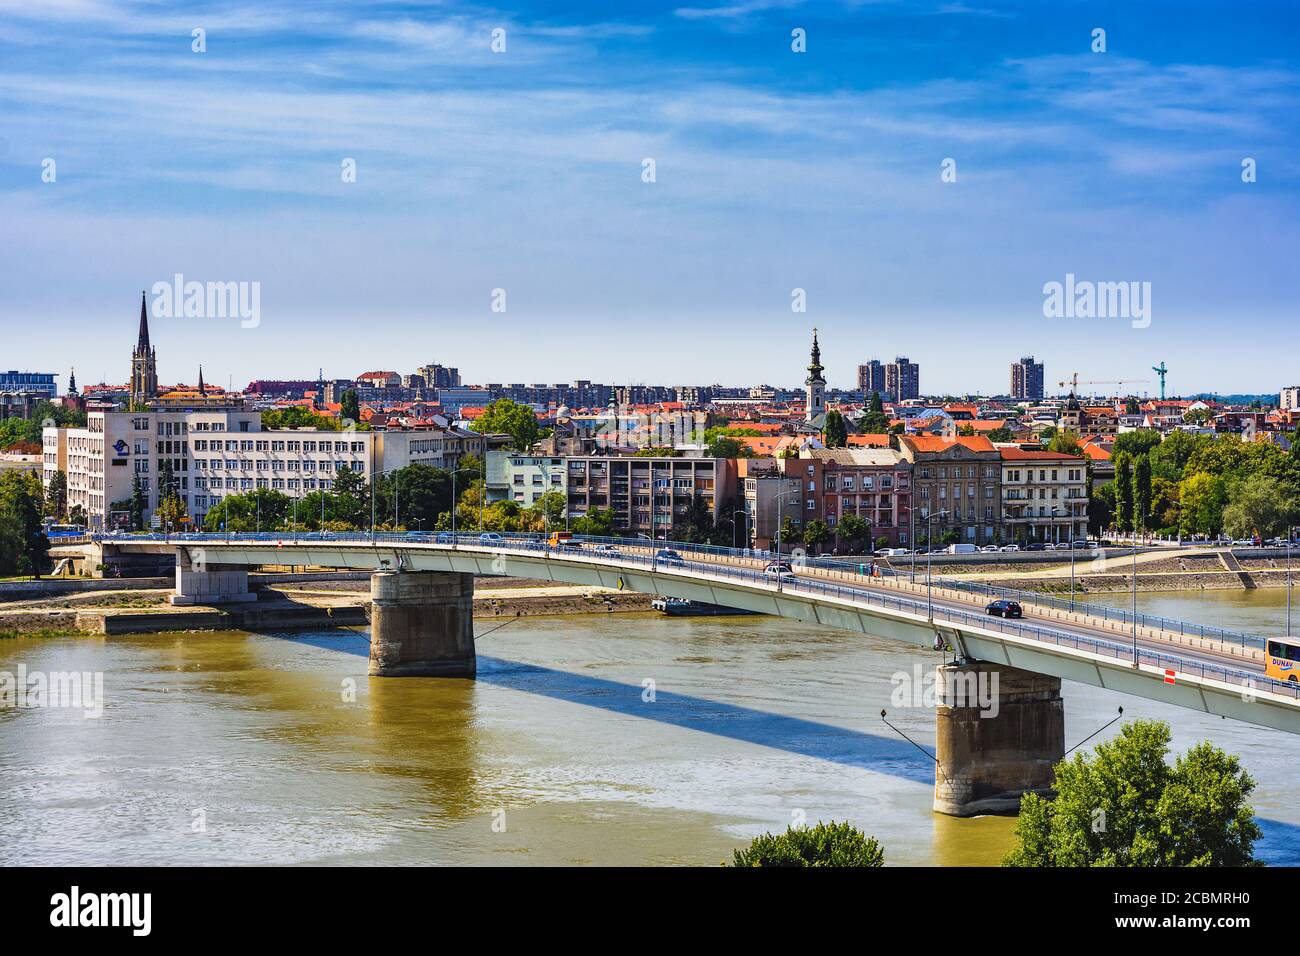 Novi Sad / Serbie - 16 août 2017 : paysage urbain de Novi Sad, deuxième plus grande ville de Serbie et capitale de la province autonome de Voïvodine avec Banque D'Images